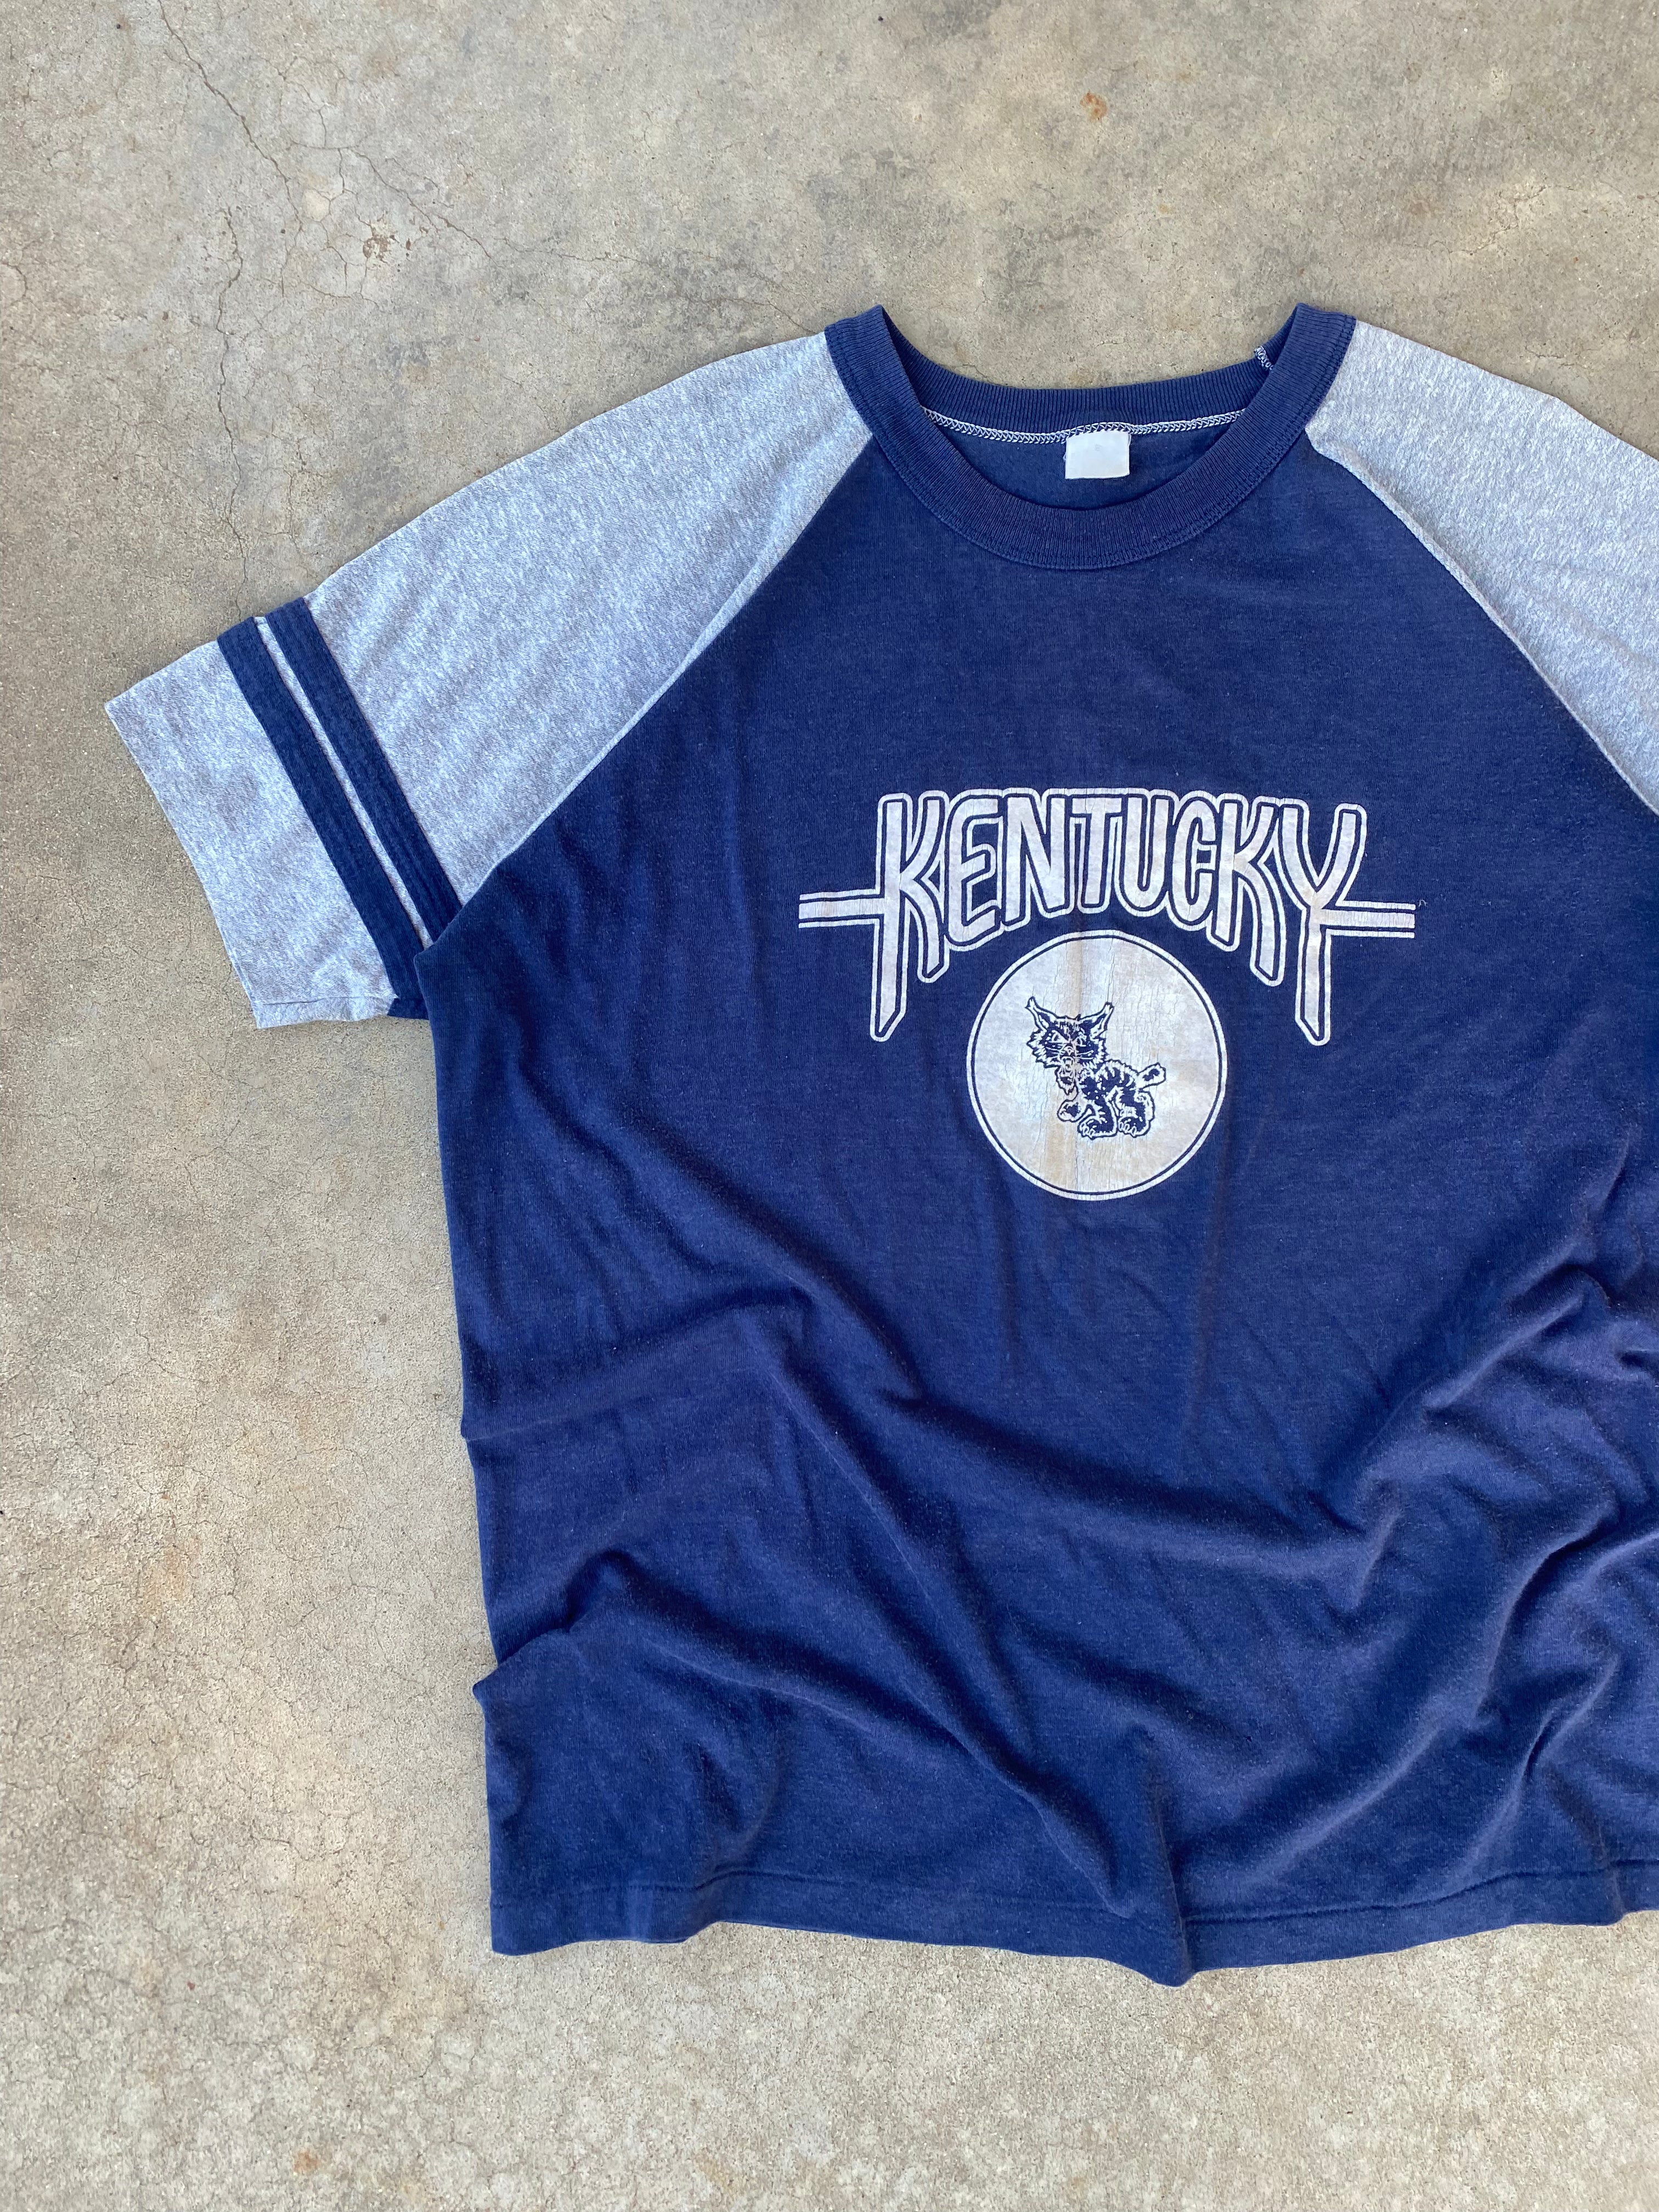 1970s Kentucky Wildcats T-Shirt (L)